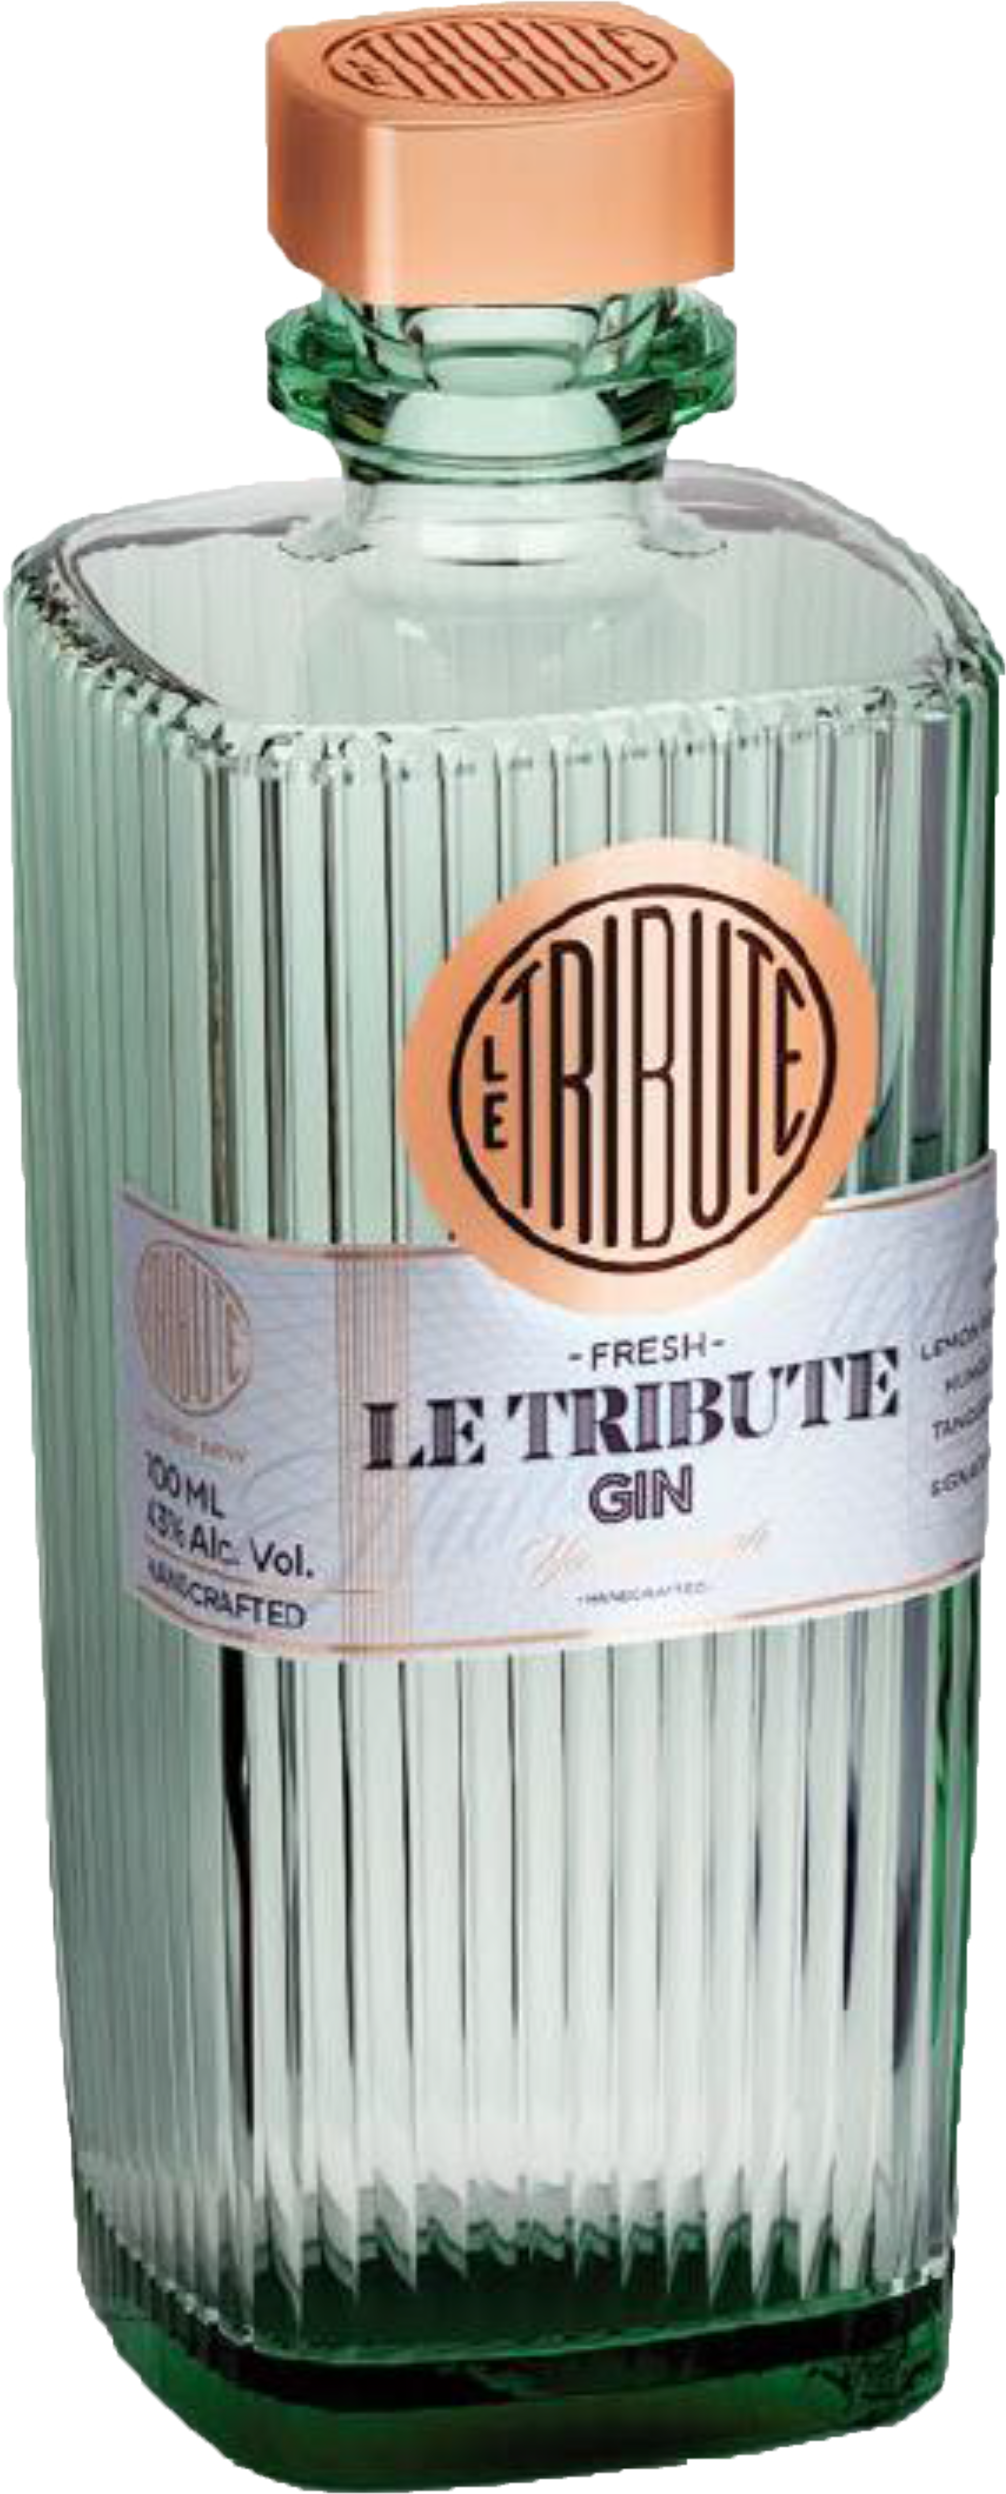 Spain - Le Tribute Gin - Adega Royale Limited